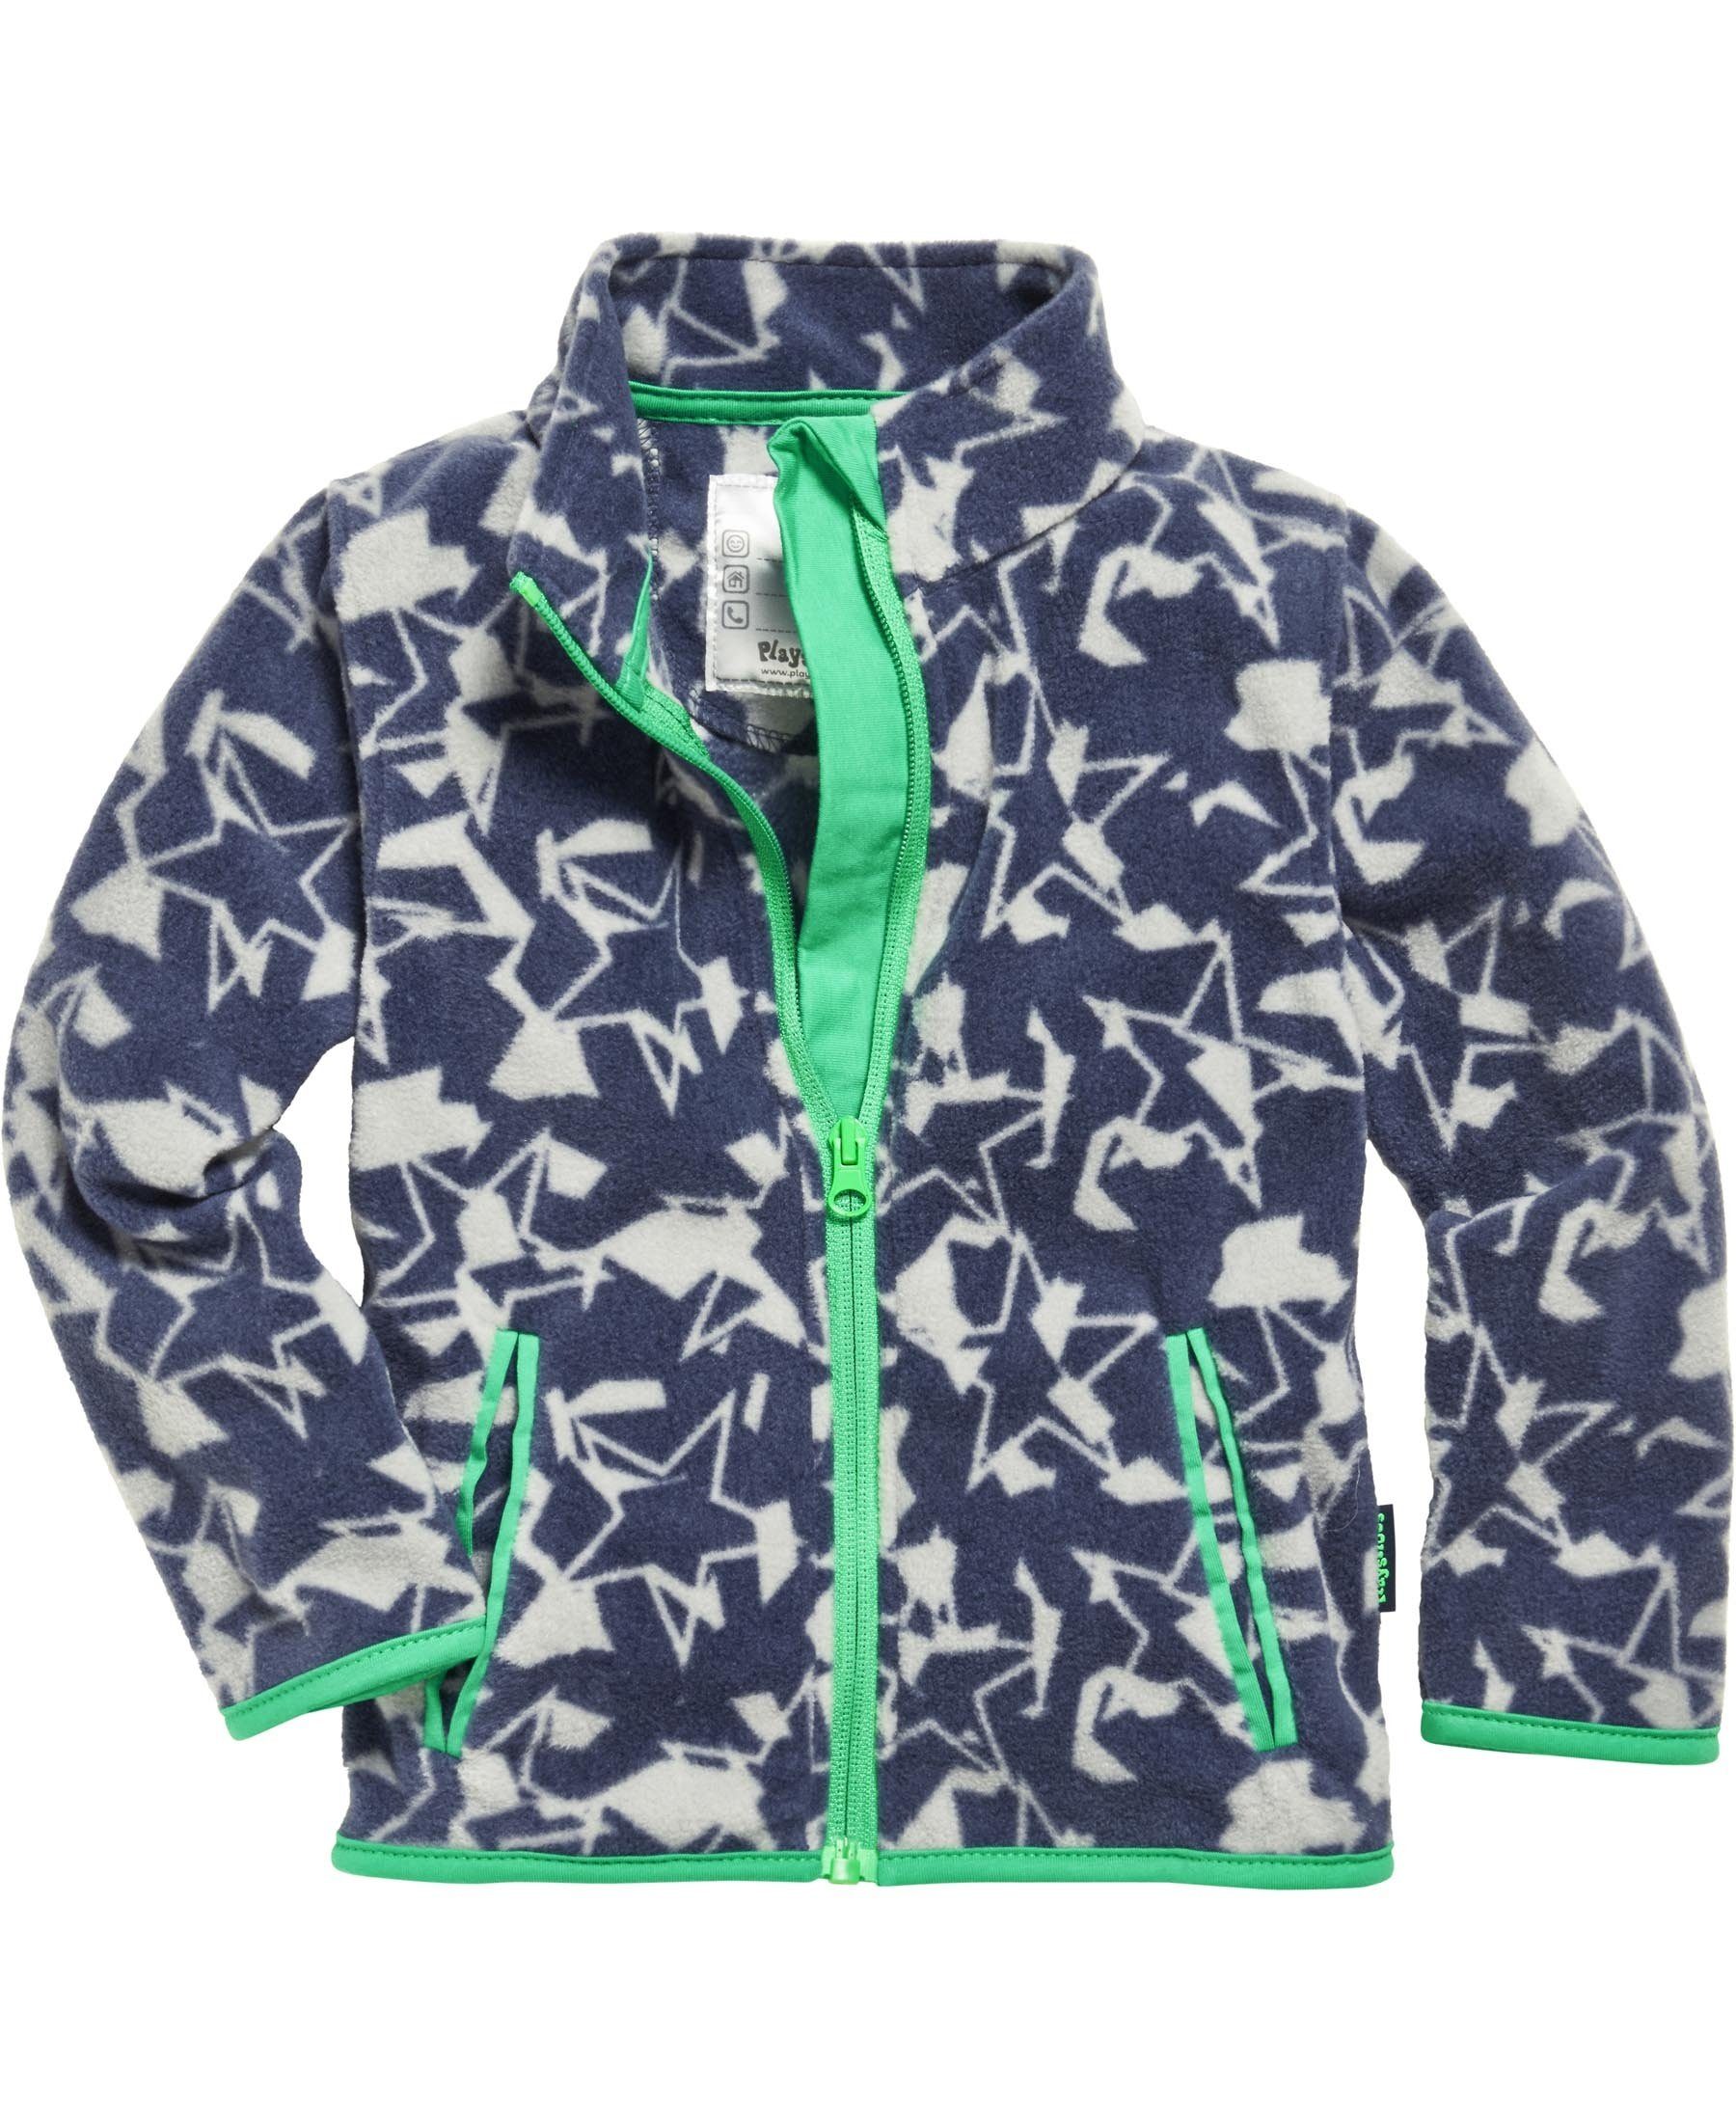 Playshoes Fleecejacke Camouflage-Optik mit Sternen-Print allover Camouflage, der Sterne Fleece-Jacke in Fleece-Jacke